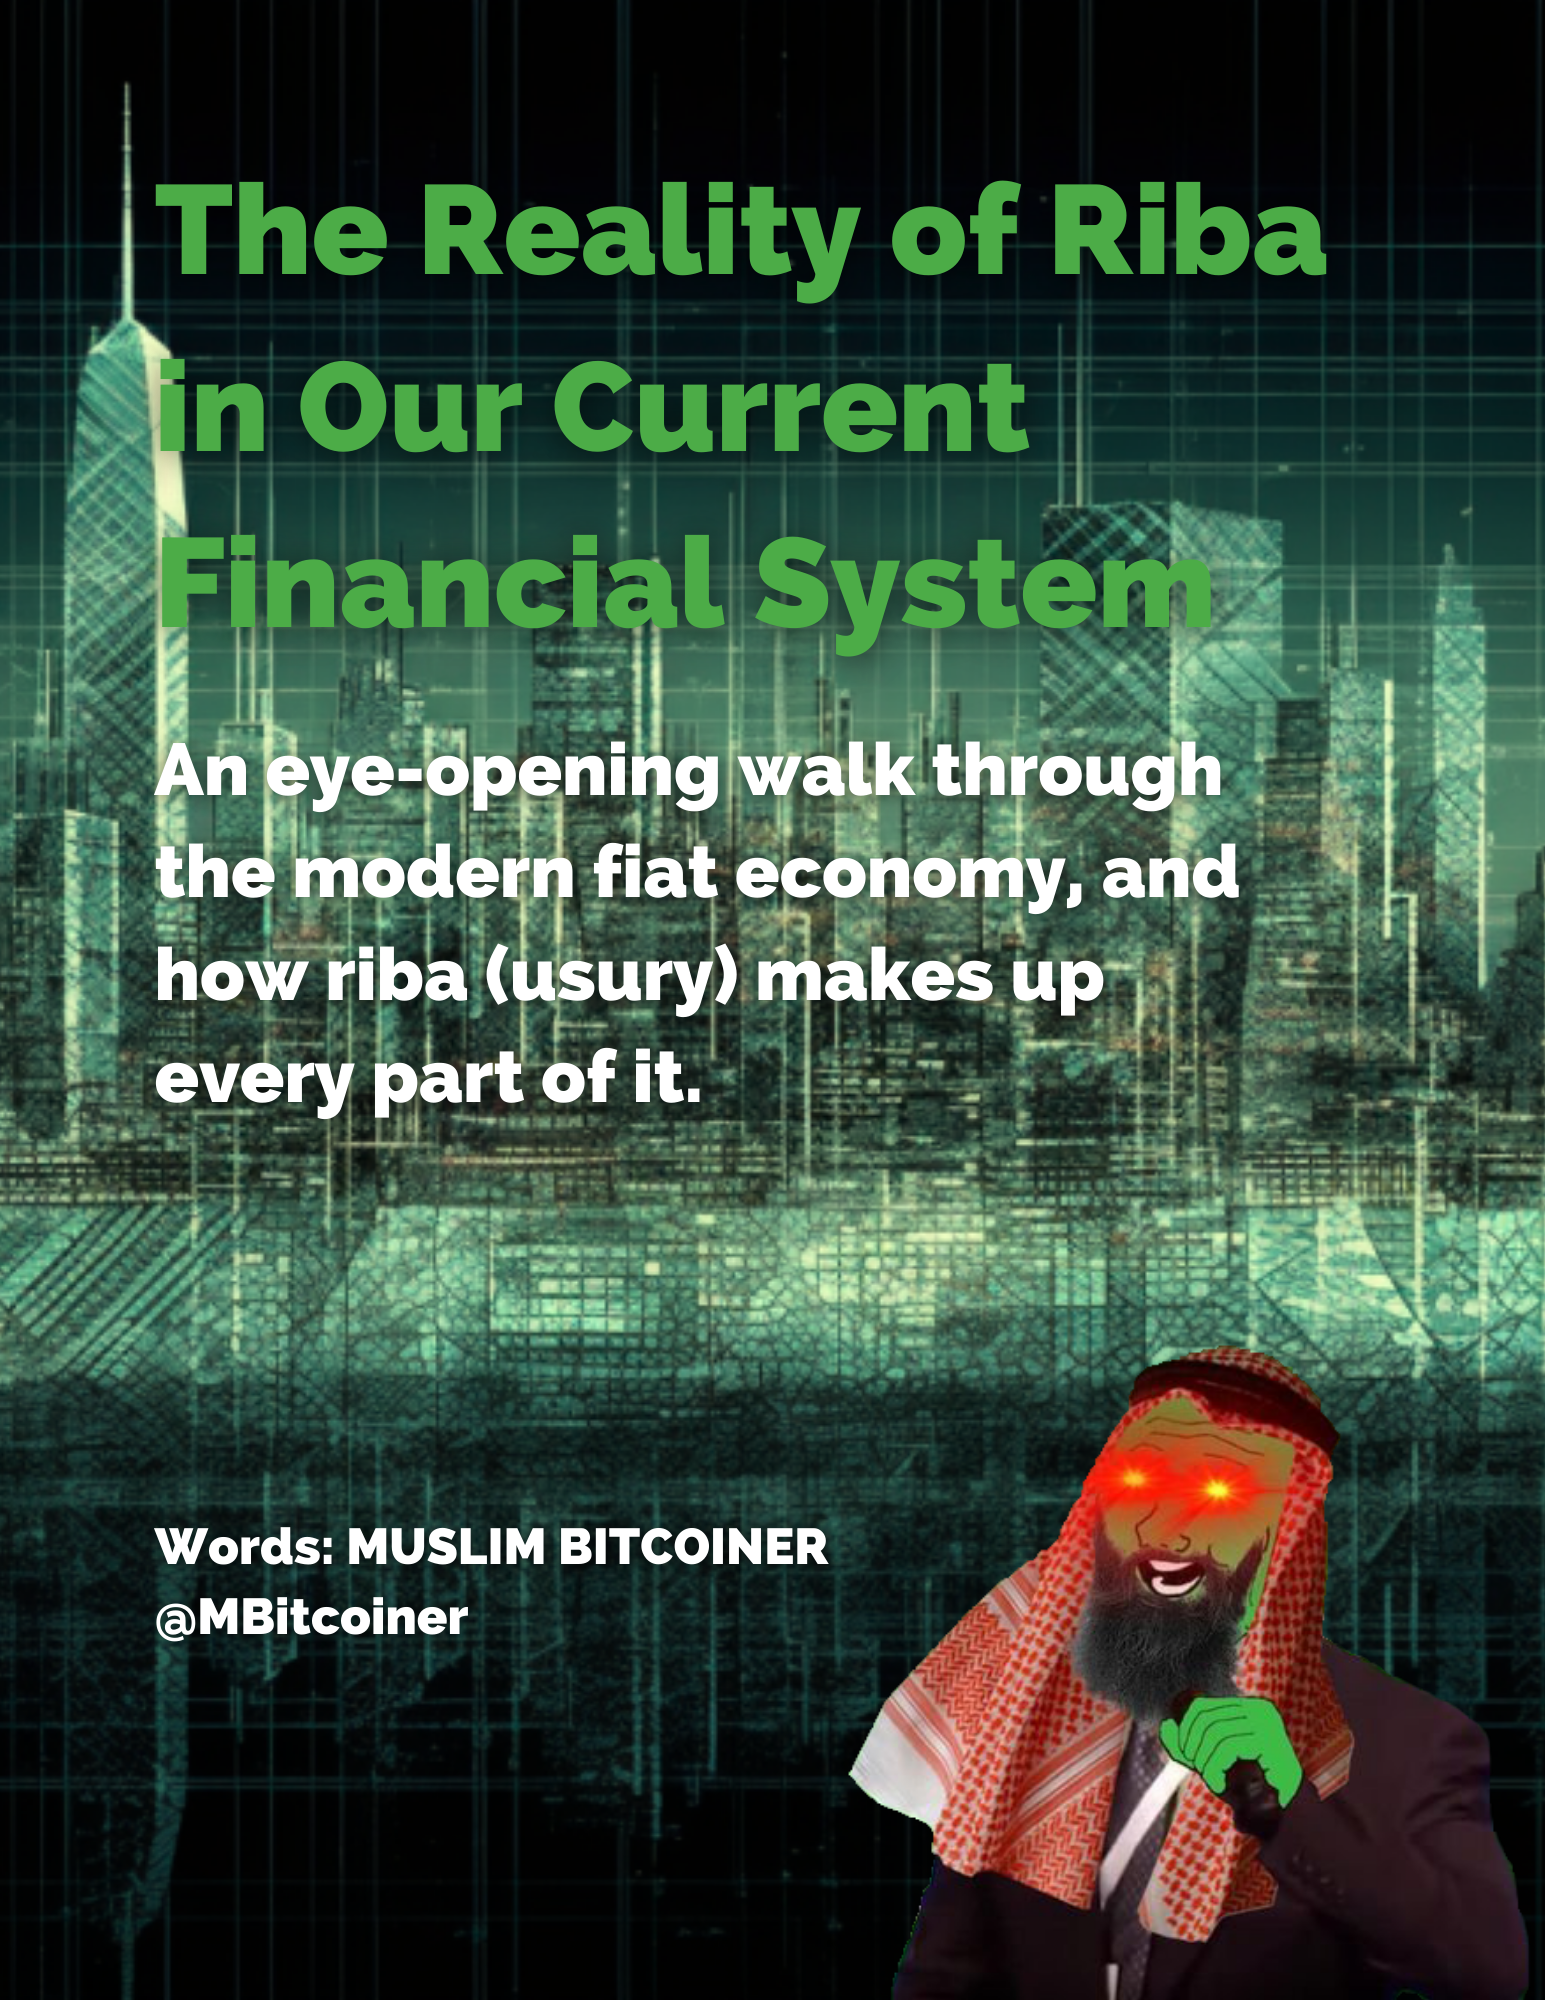 THE REALITY OF RIBA